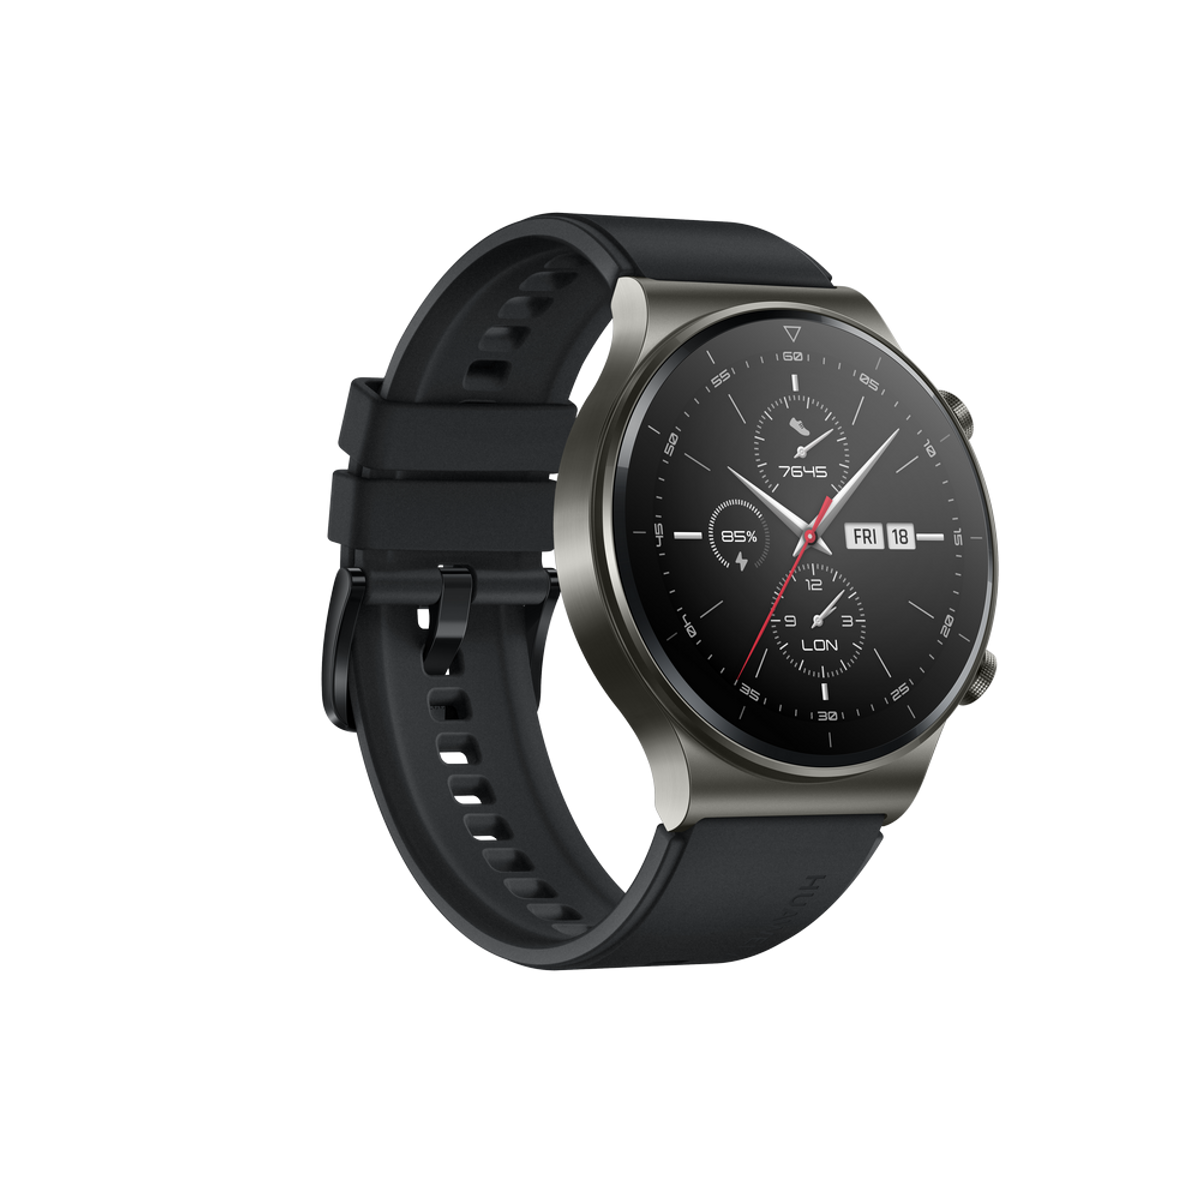 HUAWEI Watch GT schwarz 140-210 2 mm, Silikonarmband, Pro Smartwatch